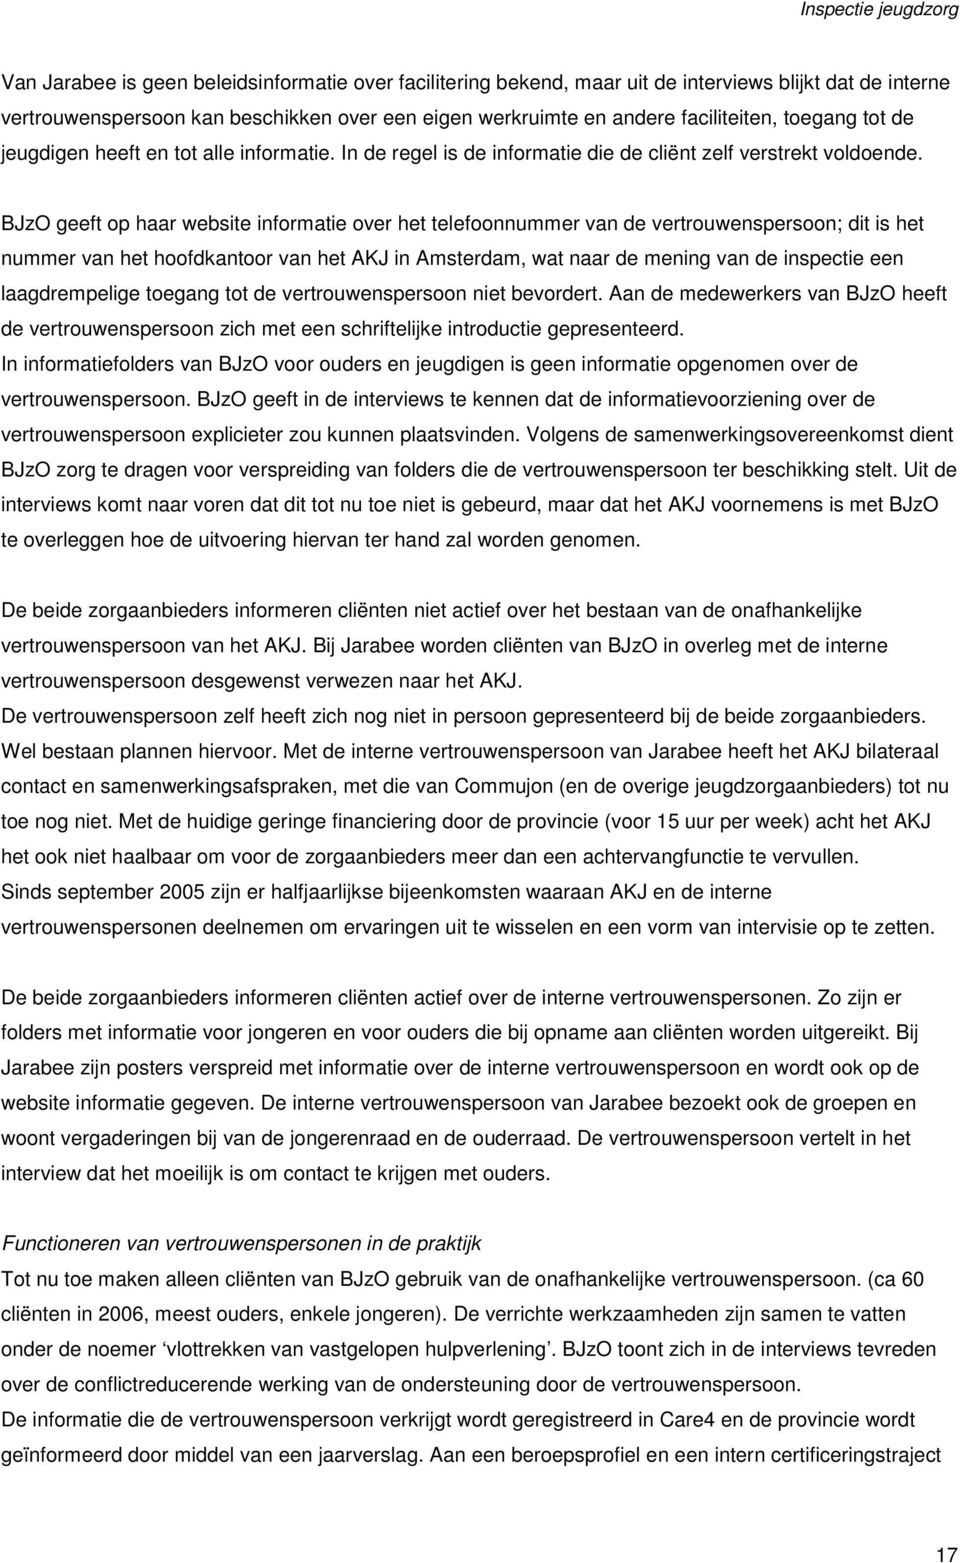 BJzO geeft op haar website informatie over het telefoonnummer van de vertrouwenspersoon; dit is het nummer van het hoofdkantoor van het AKJ in Amsterdam, wat naar de mening van de inspectie een